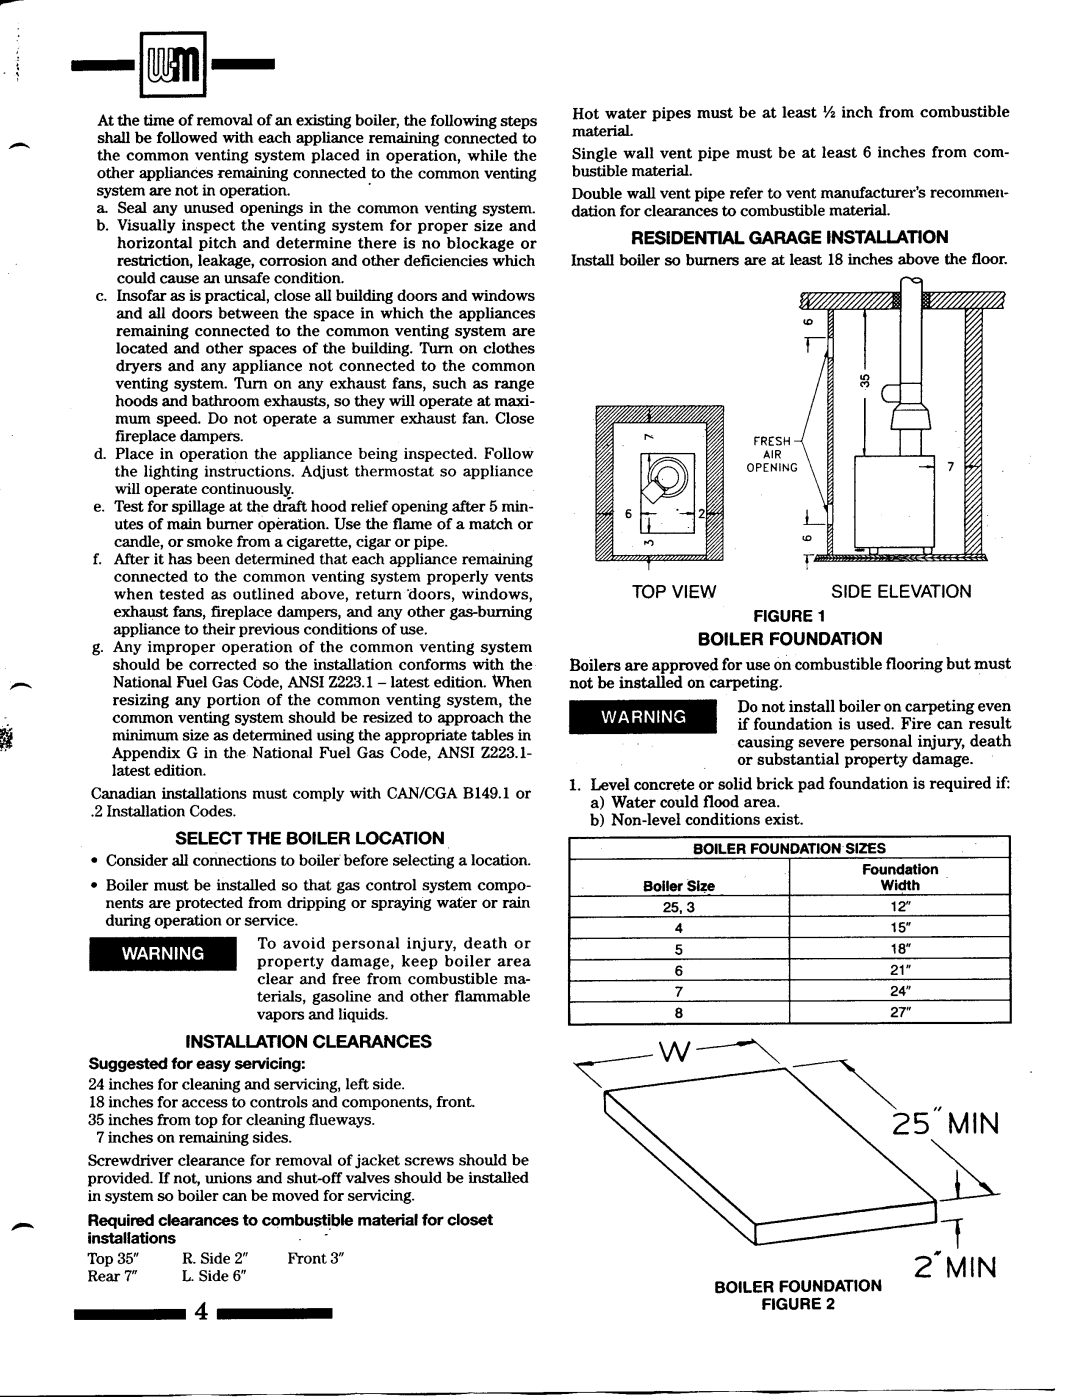 Weil-McLain CG Series 11, CGX Series 1 manual 